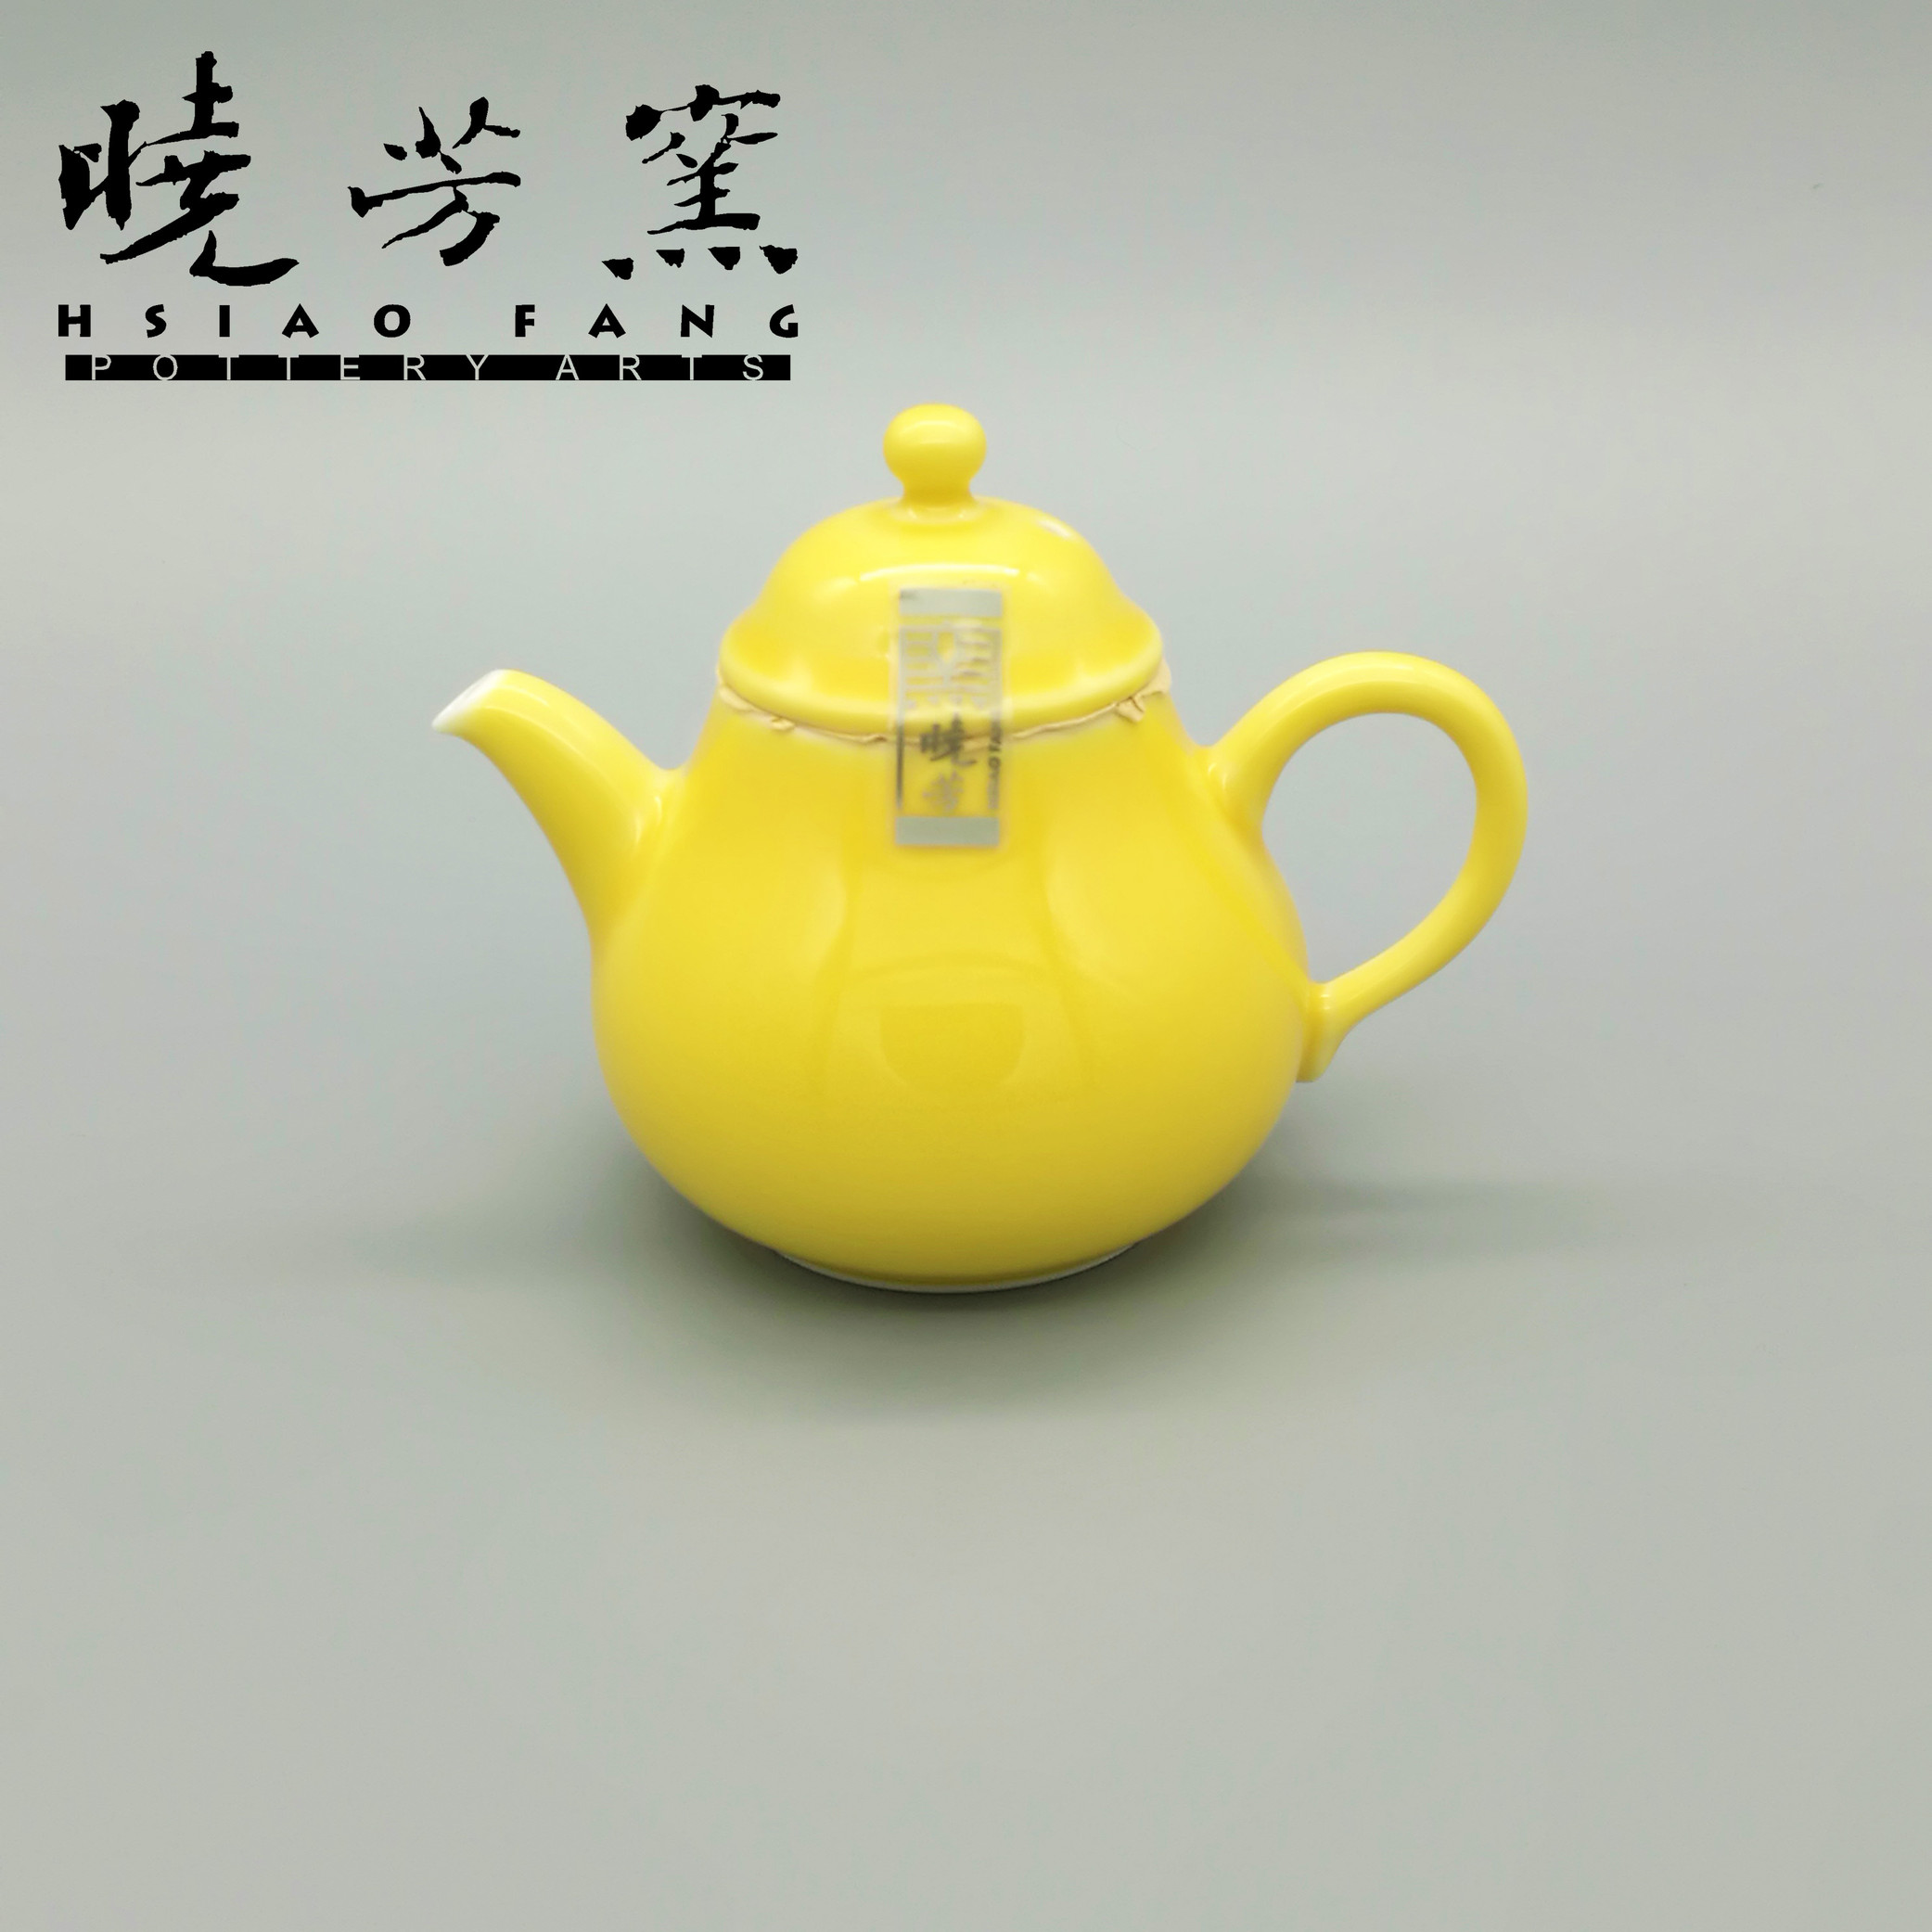 得宜瓷舍台湾晓芳窑黄釉梨壶140毫升热销无瑕疵茶壶茶具已售罄